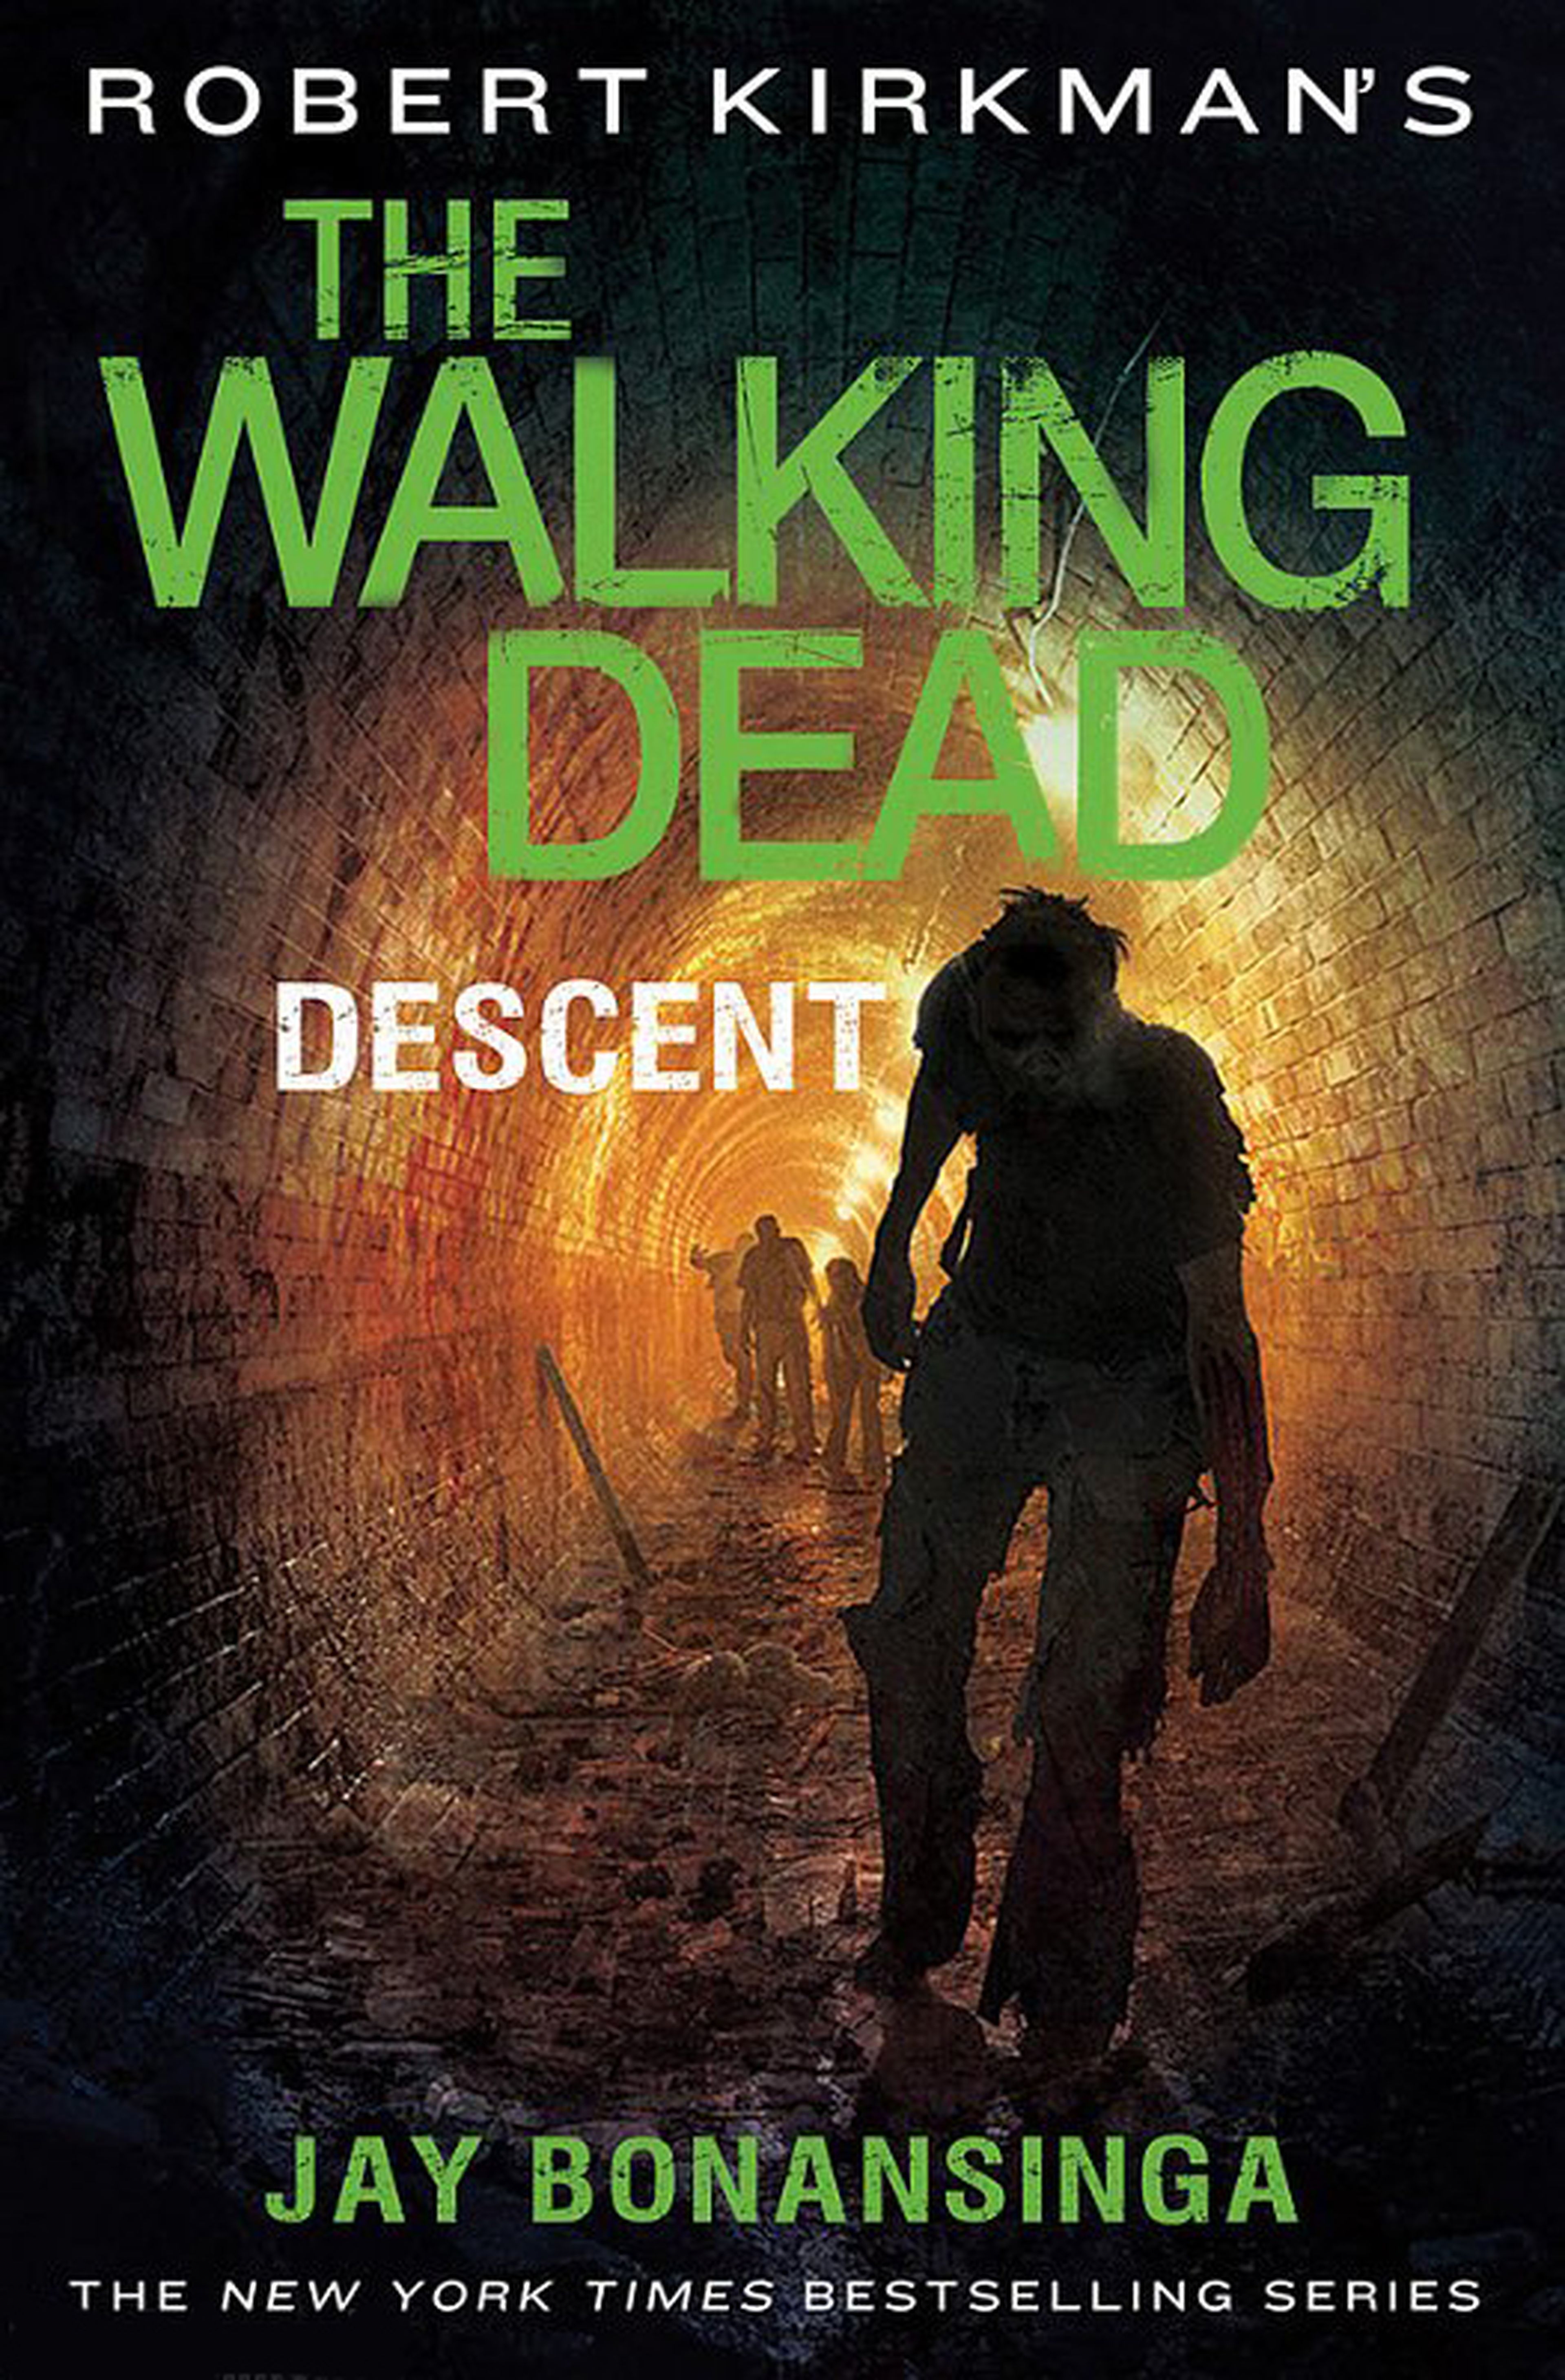 The Walking Dead tendrá cuatro nuevas novelas